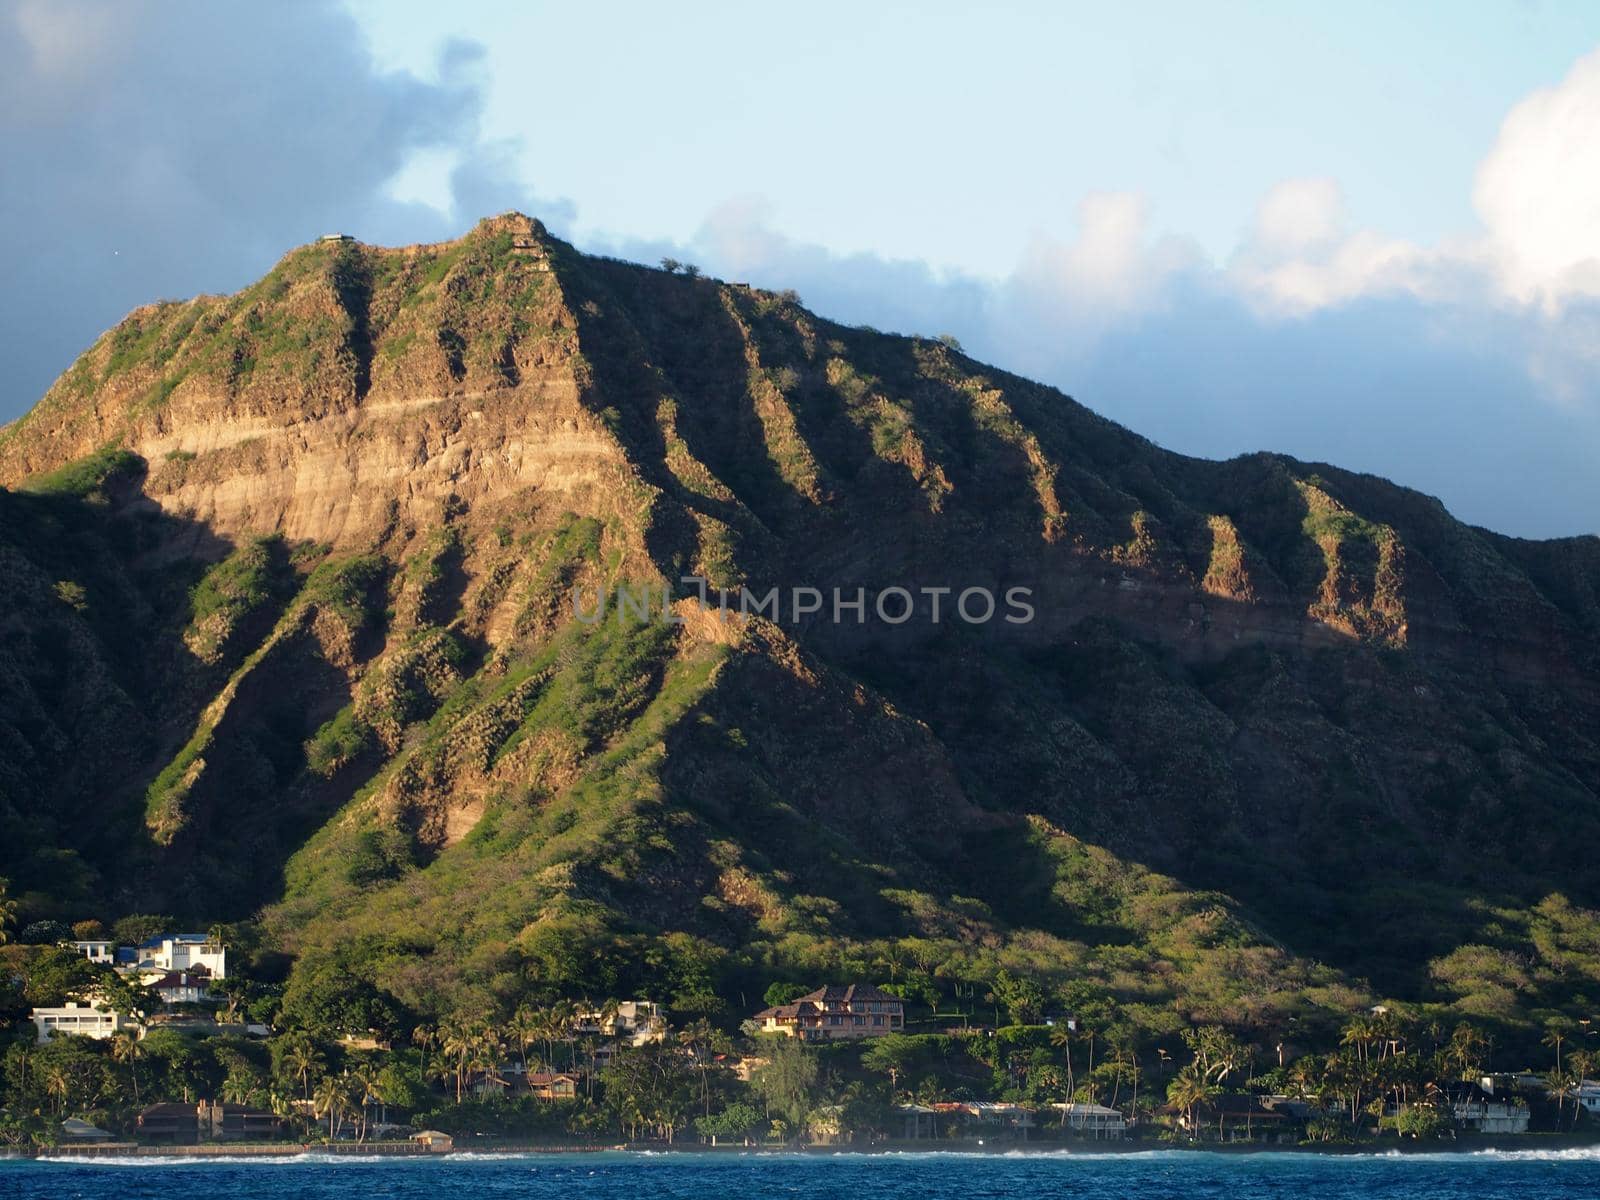 Leahi Beach Park, Diamond Head Crater, and coastline seen from the ocean on Oahu, Hawaii.